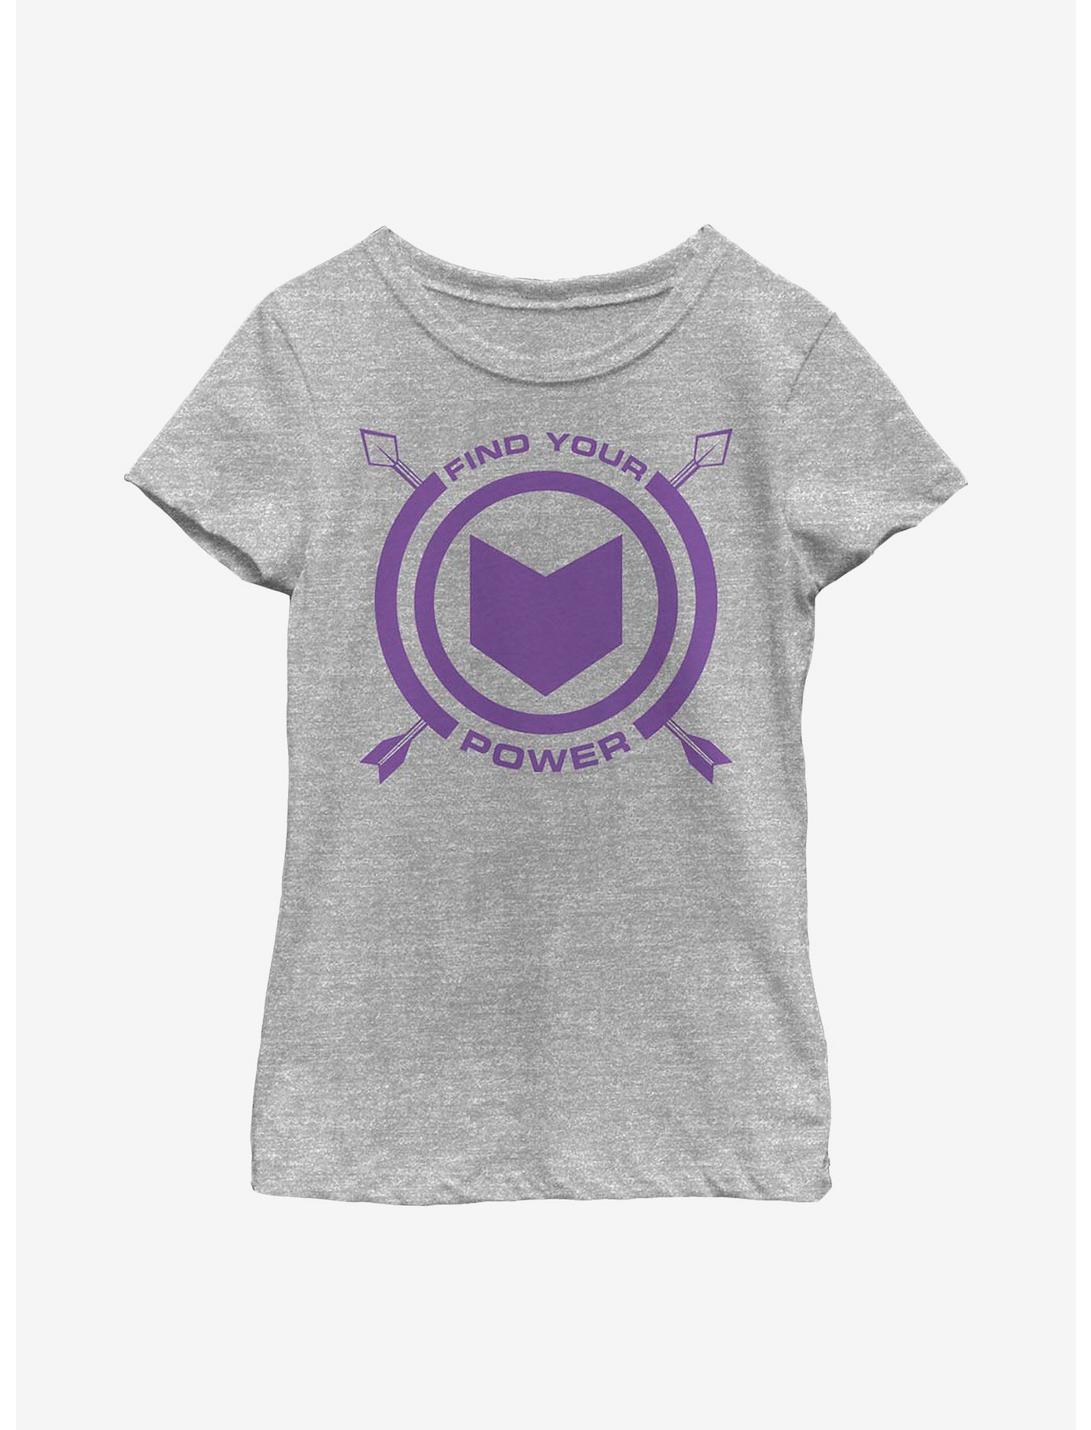 Marvel Hawkeye Power Of Hawkeye Youth Girls T-Shirt, ATH HTR, hi-res